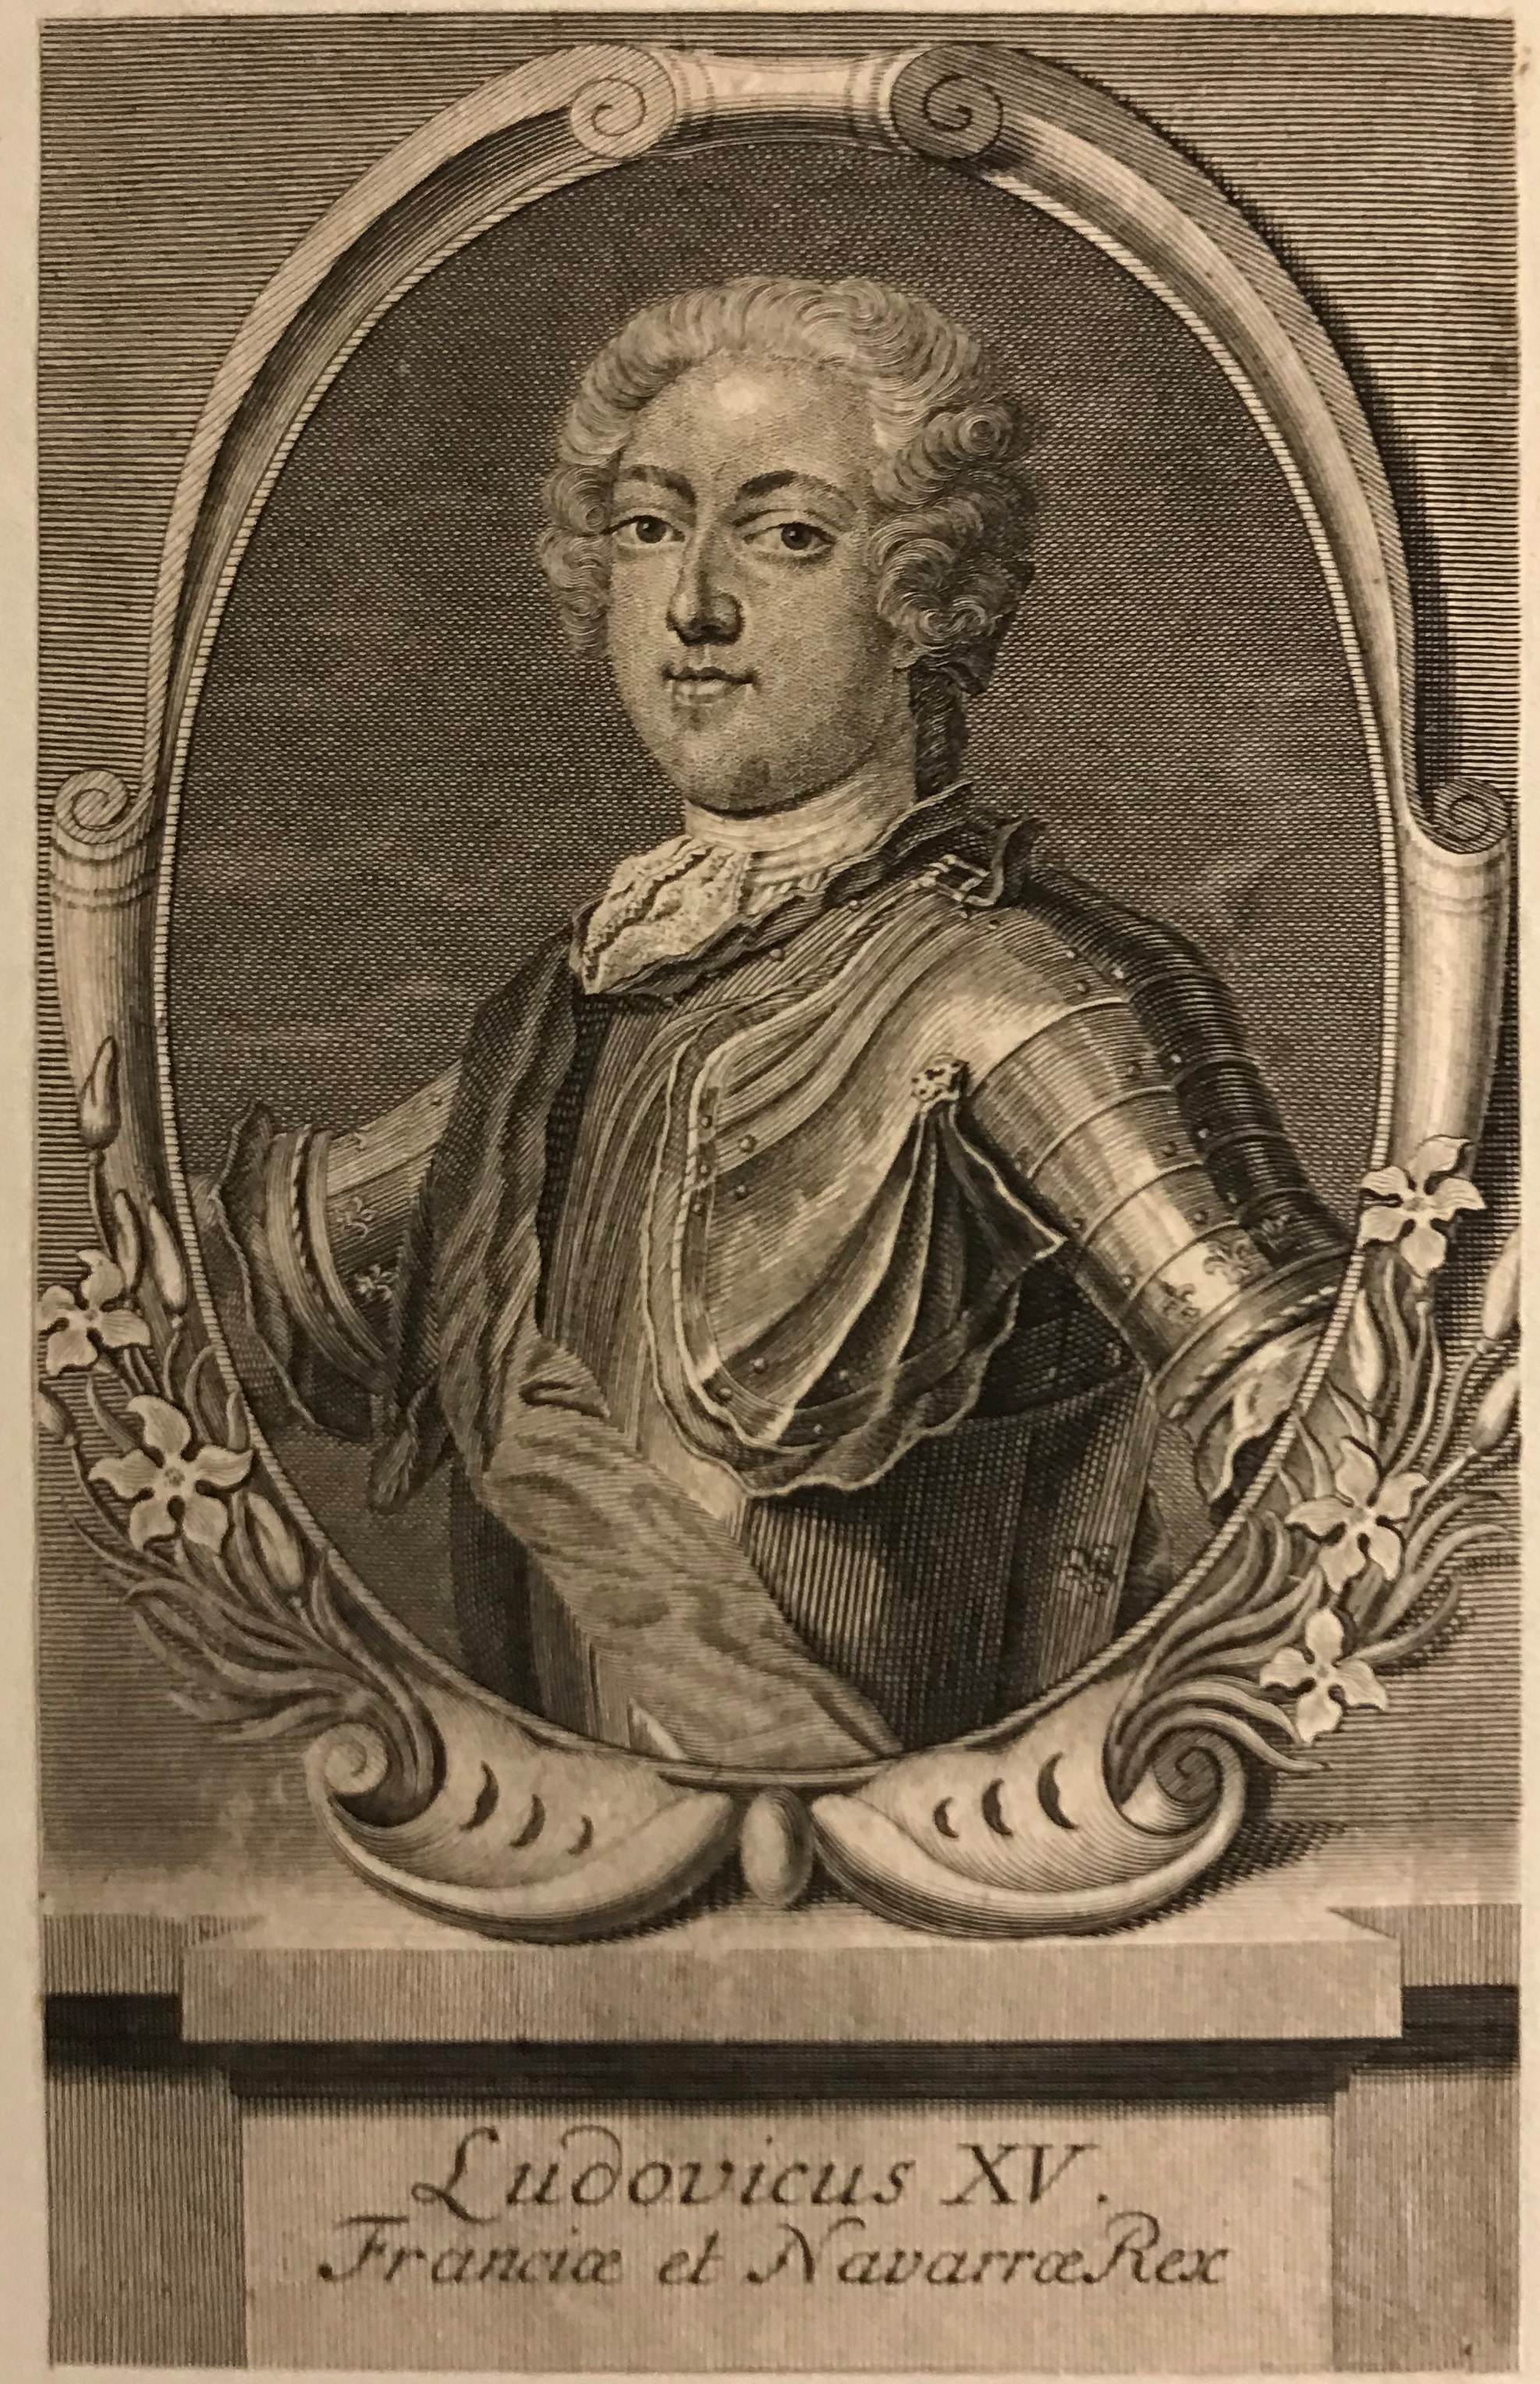 Gravyr föreställande en ung man med peruk, spetskrage och rustning i en oval ram. Under bilden texten "Ludovicus XV. Franciae et Navarrae Rex".